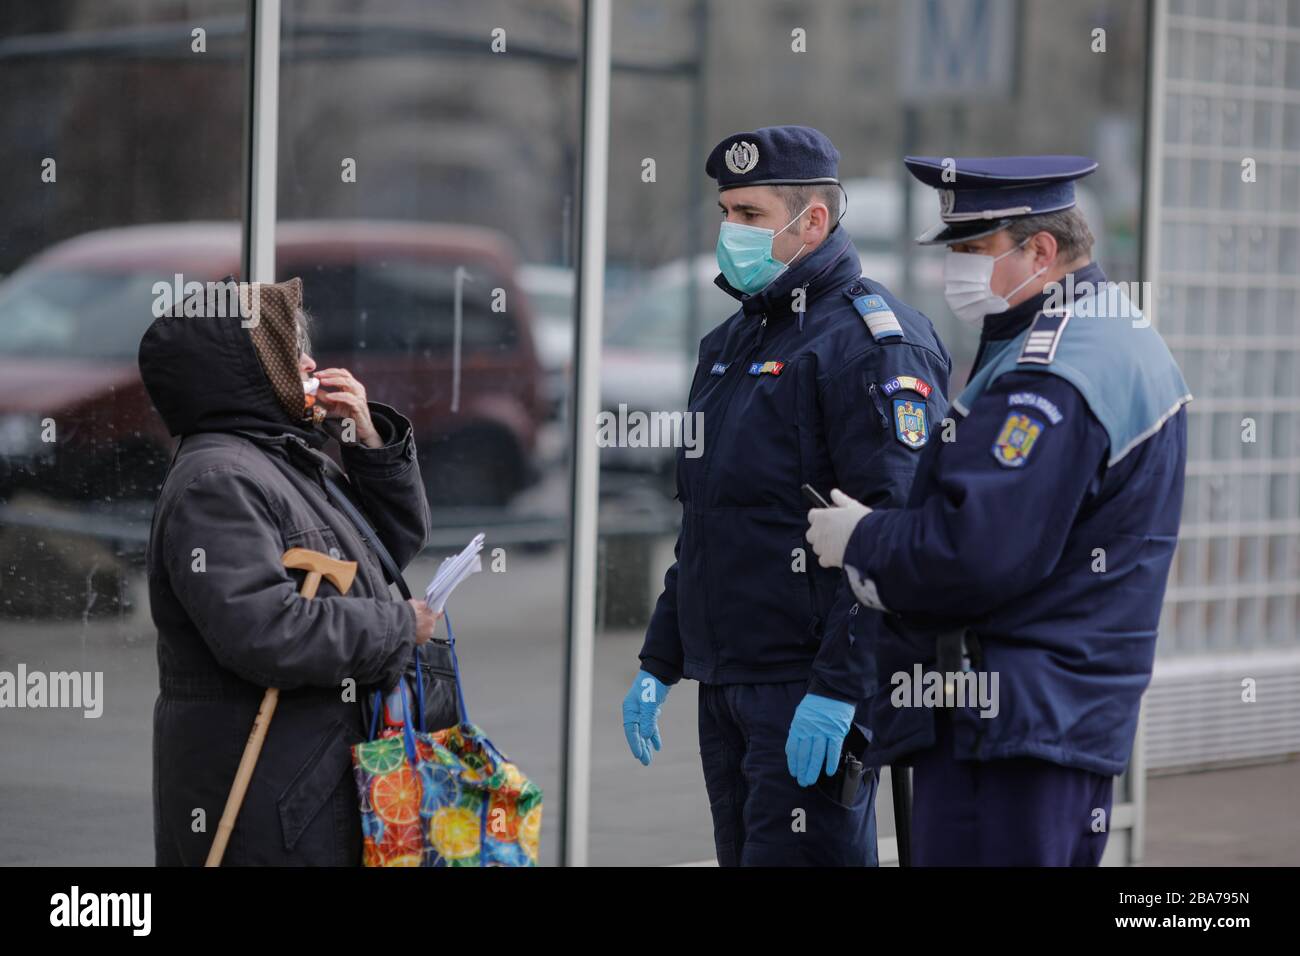 Bucarest, Romania - 25 marzo 2020: La polizia chiede alle persone di mostrare documenti di identità per applicare un giorno intero di blocco per limitare la diffusione del coronavirus. Foto Stock